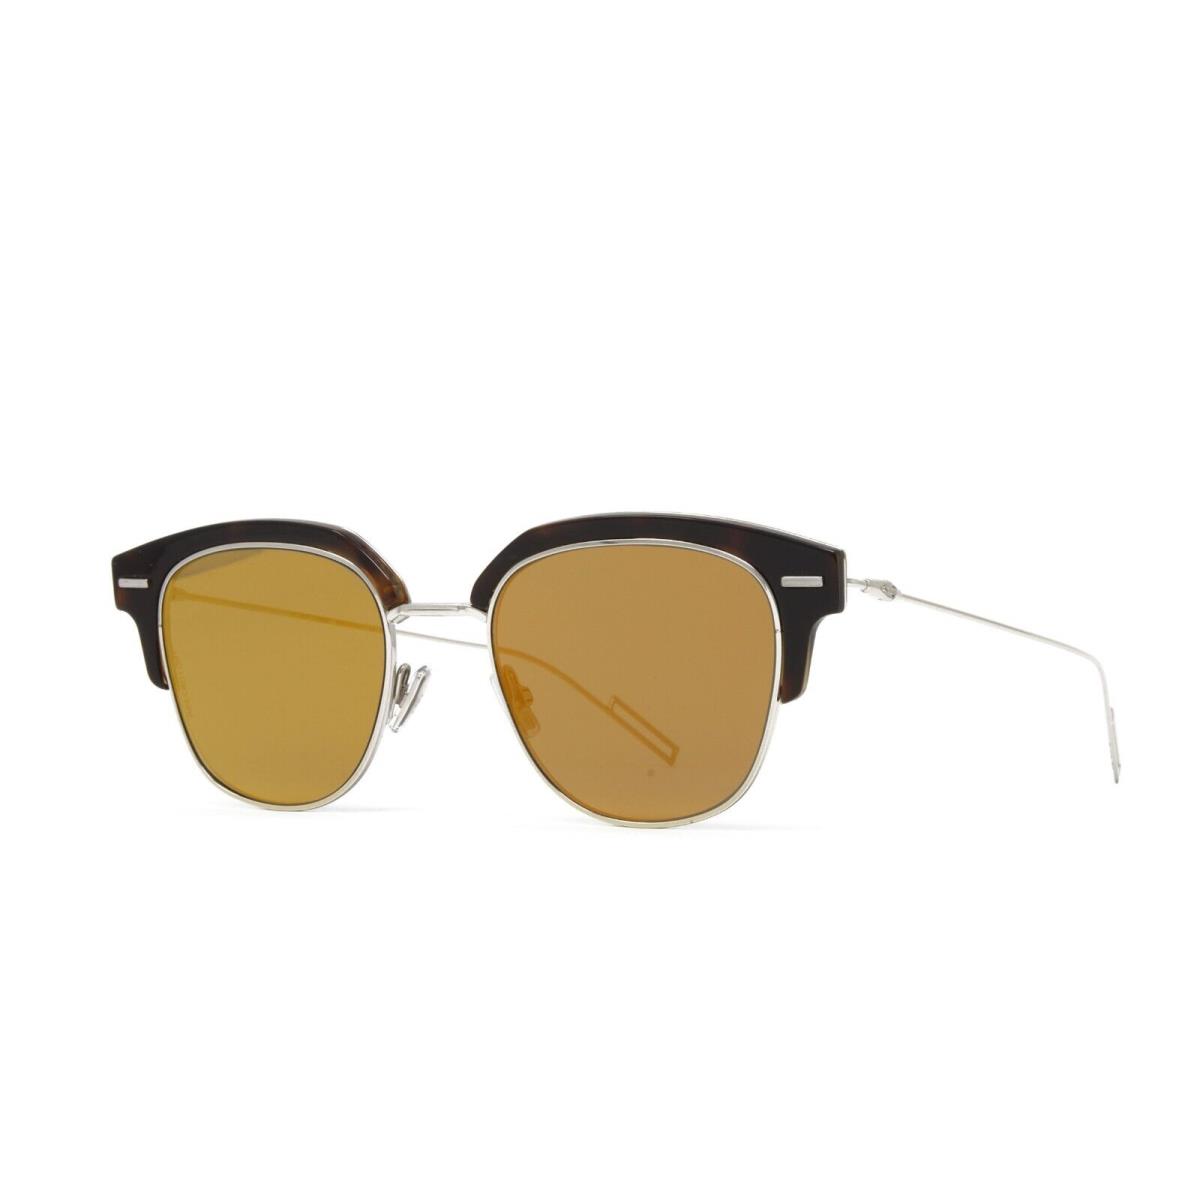 Christian Dior Sunglasses Unisex Tensity 2IK Havana Gold 48mm Gold Lens